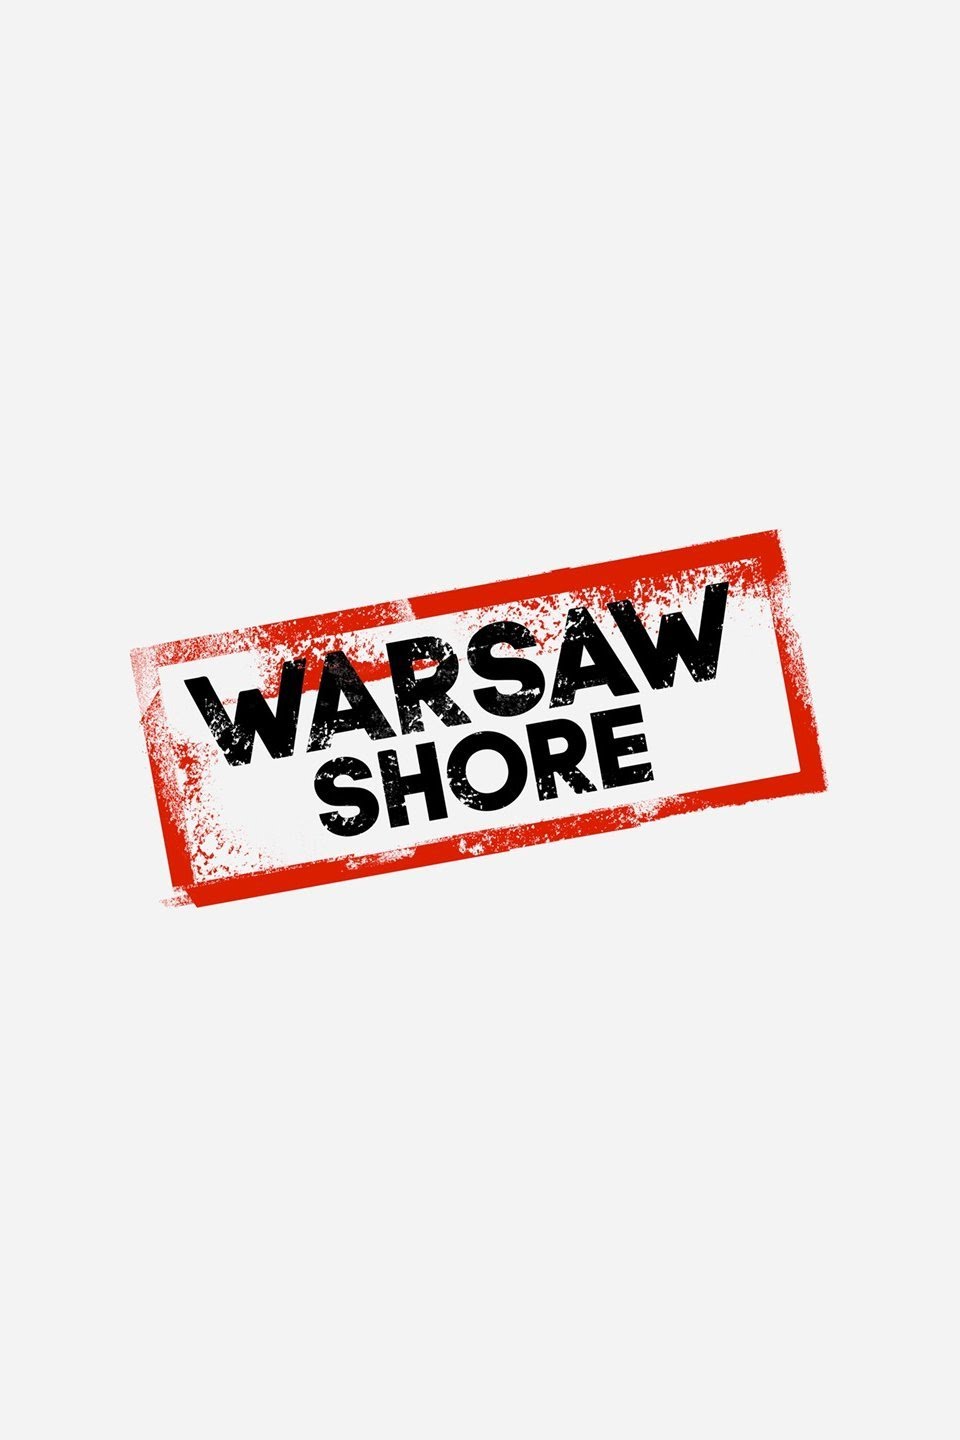 Warsaw Shore: Ekipa z Warszawy Season 20 Episode 5